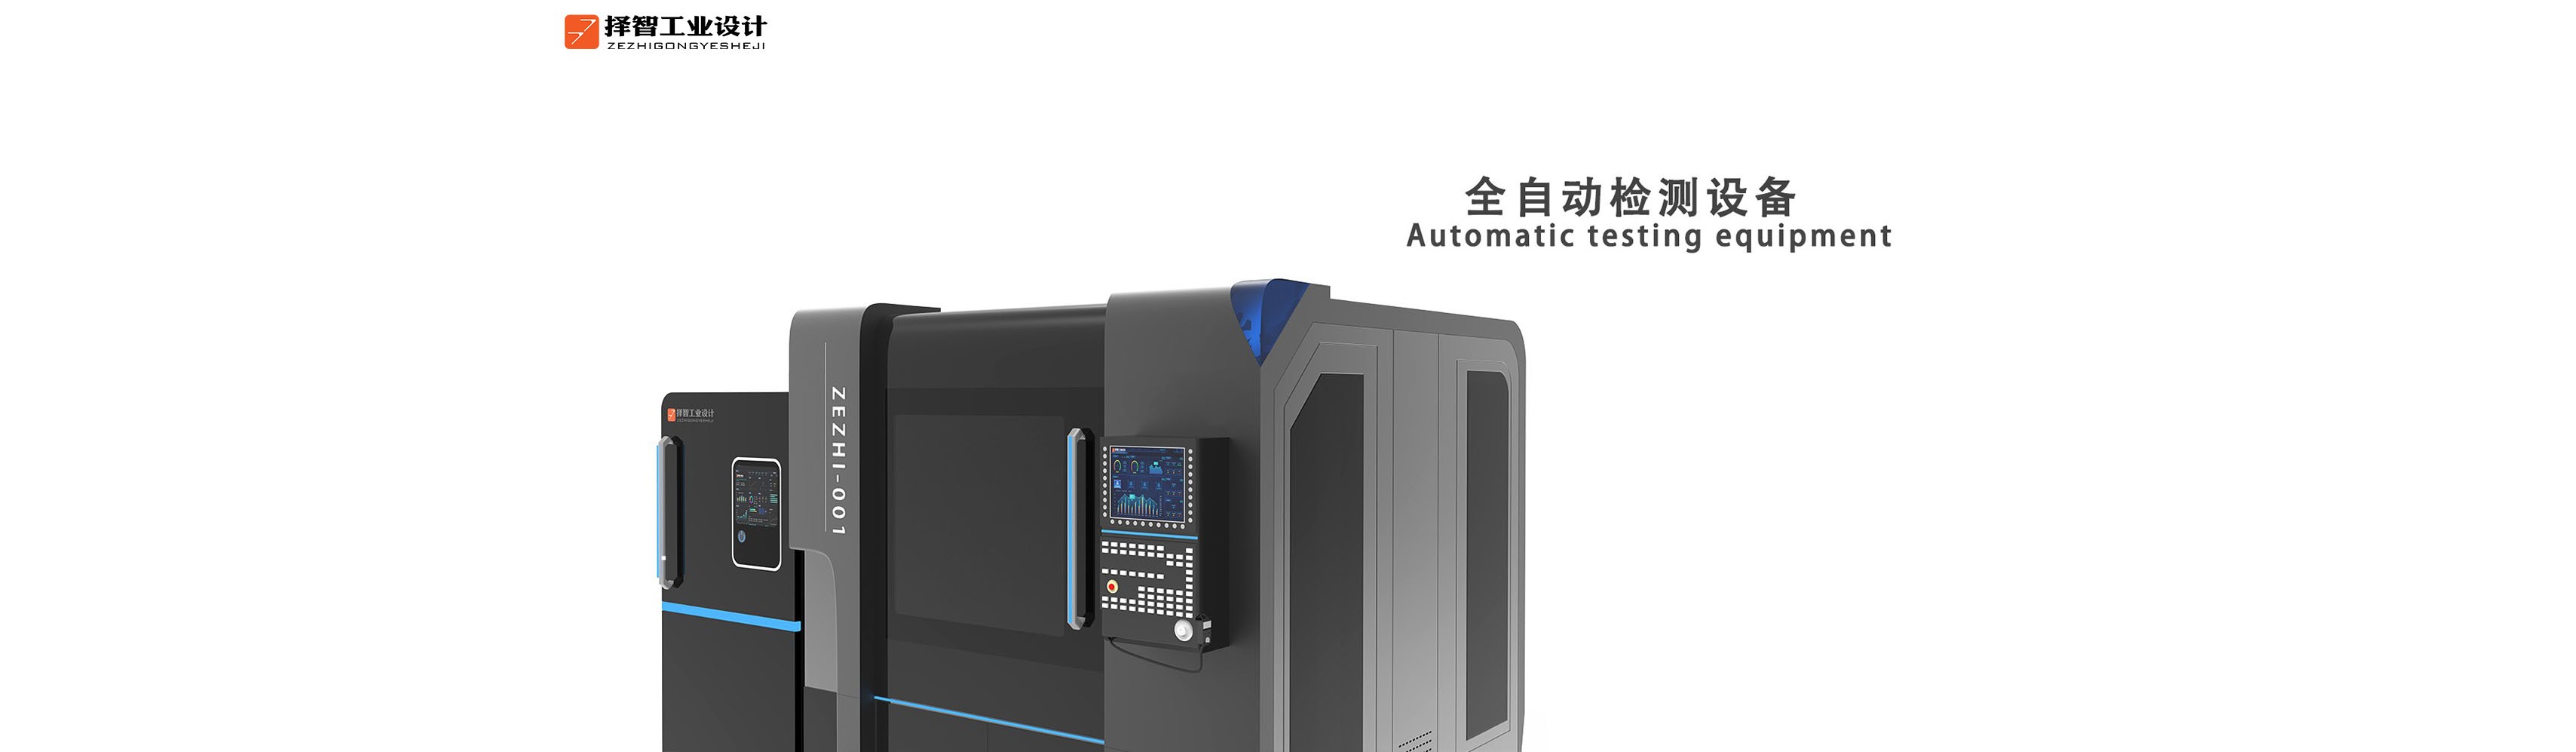 上海苏州产品设计 工业产品外观设计 结构设计 全自动检测设备外观设计